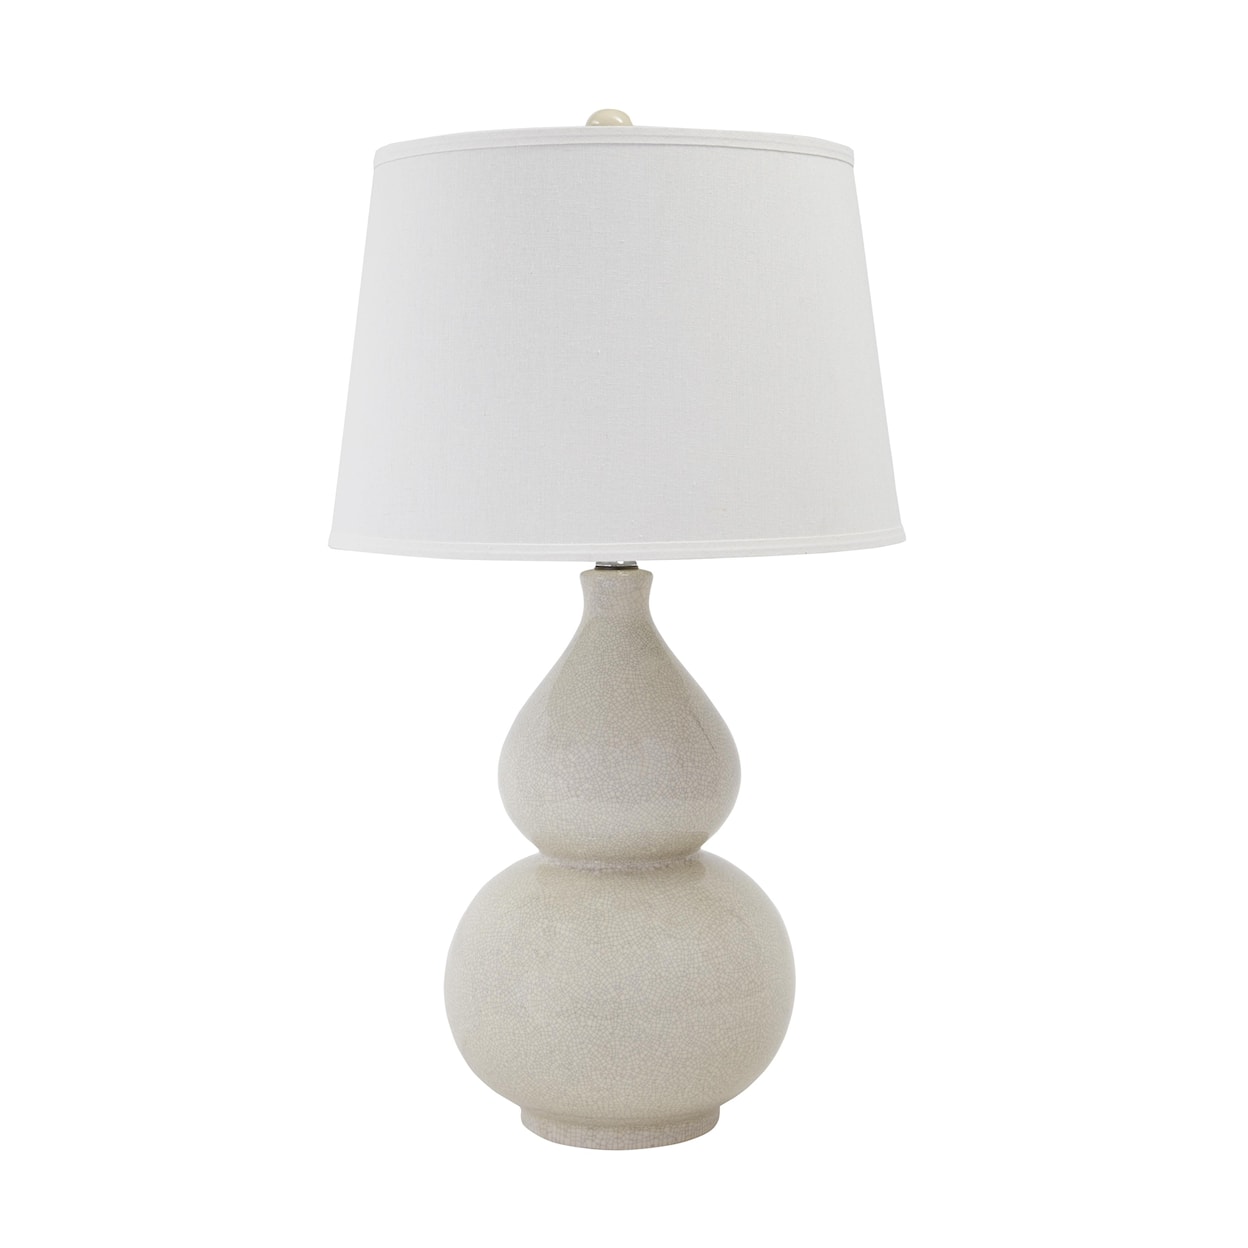 Signature Design Lamps - Contemporary Ceramic Table Lamp 